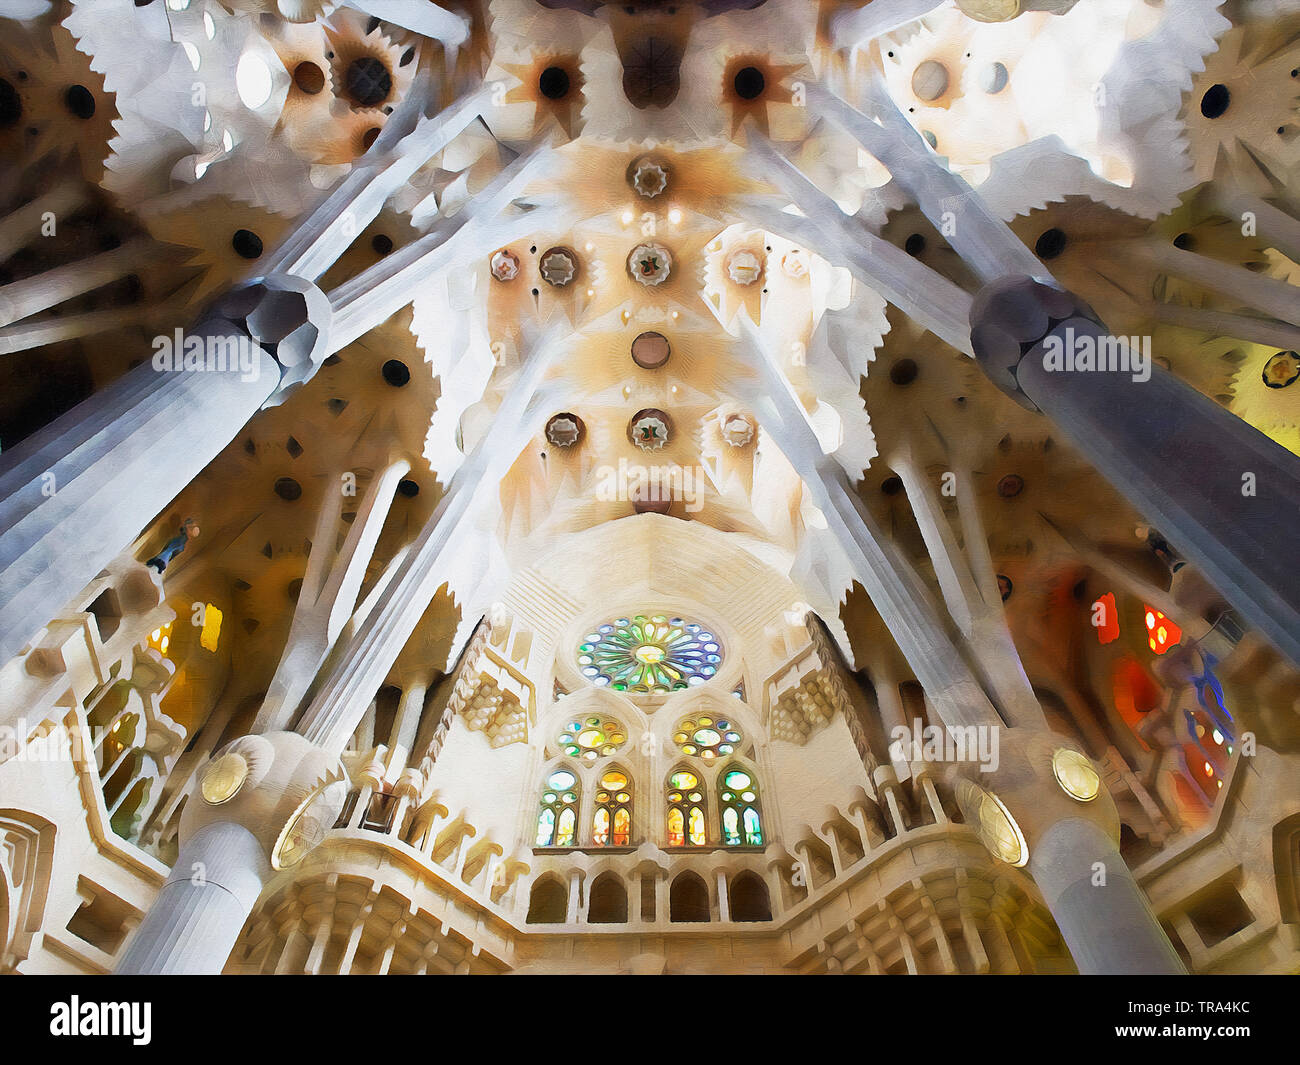 Die Sagrada Familia, Barcelona. Eine große katholische Basilika Meisterwerk des Architekten Antoni Gaudí, der führenden Exponenten des Katalanischen Modernismus. Stockfoto